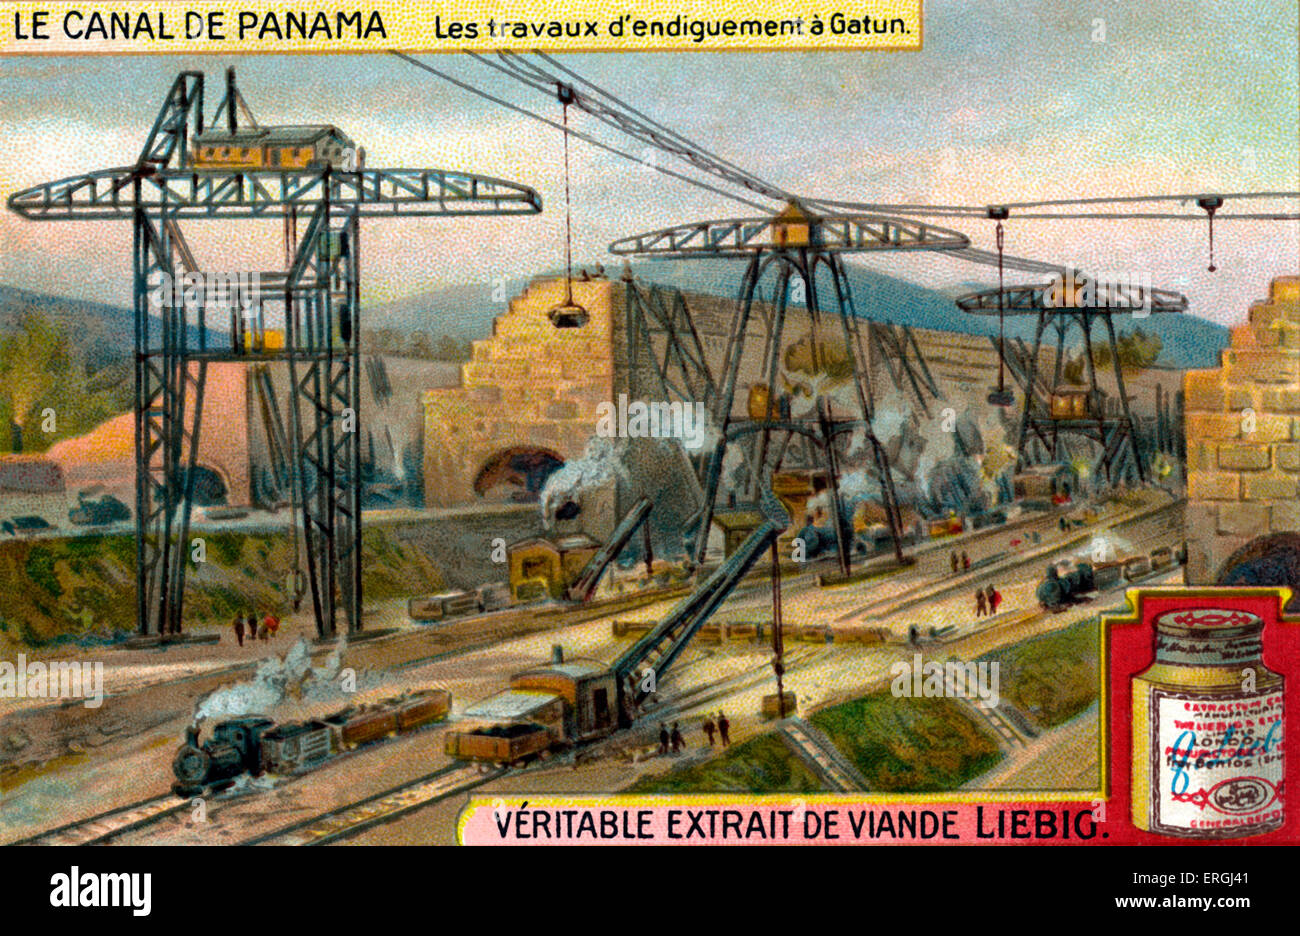 Il canale di Panama: Containtment lavora a Gatun. Posizione attuale di Gatun Dam. Liebig card da collezione serie (titolo francese: "Le Canal de Panama "). Costruito tra il 1881 e il 1914 attraverso l'istmo di Panama. Nei primi anni del XX secolo. Foto Stock